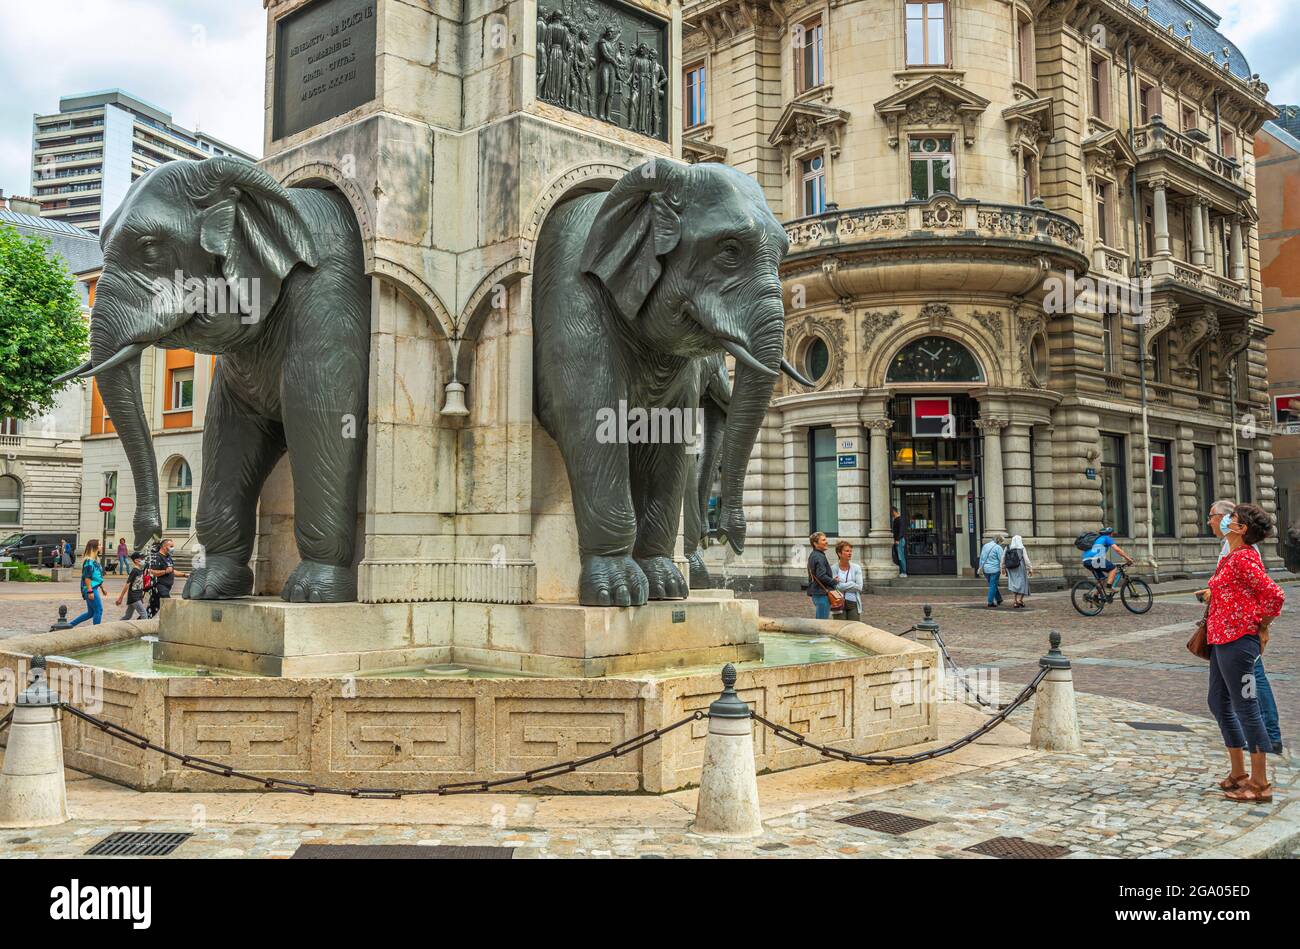 Fontaine des éléphants, fontaine commémorative de 1838, sur la place des éléphants à Chambéry. Chambéry, région Auvergne-Rhône-Alpes, France Banque D'Images